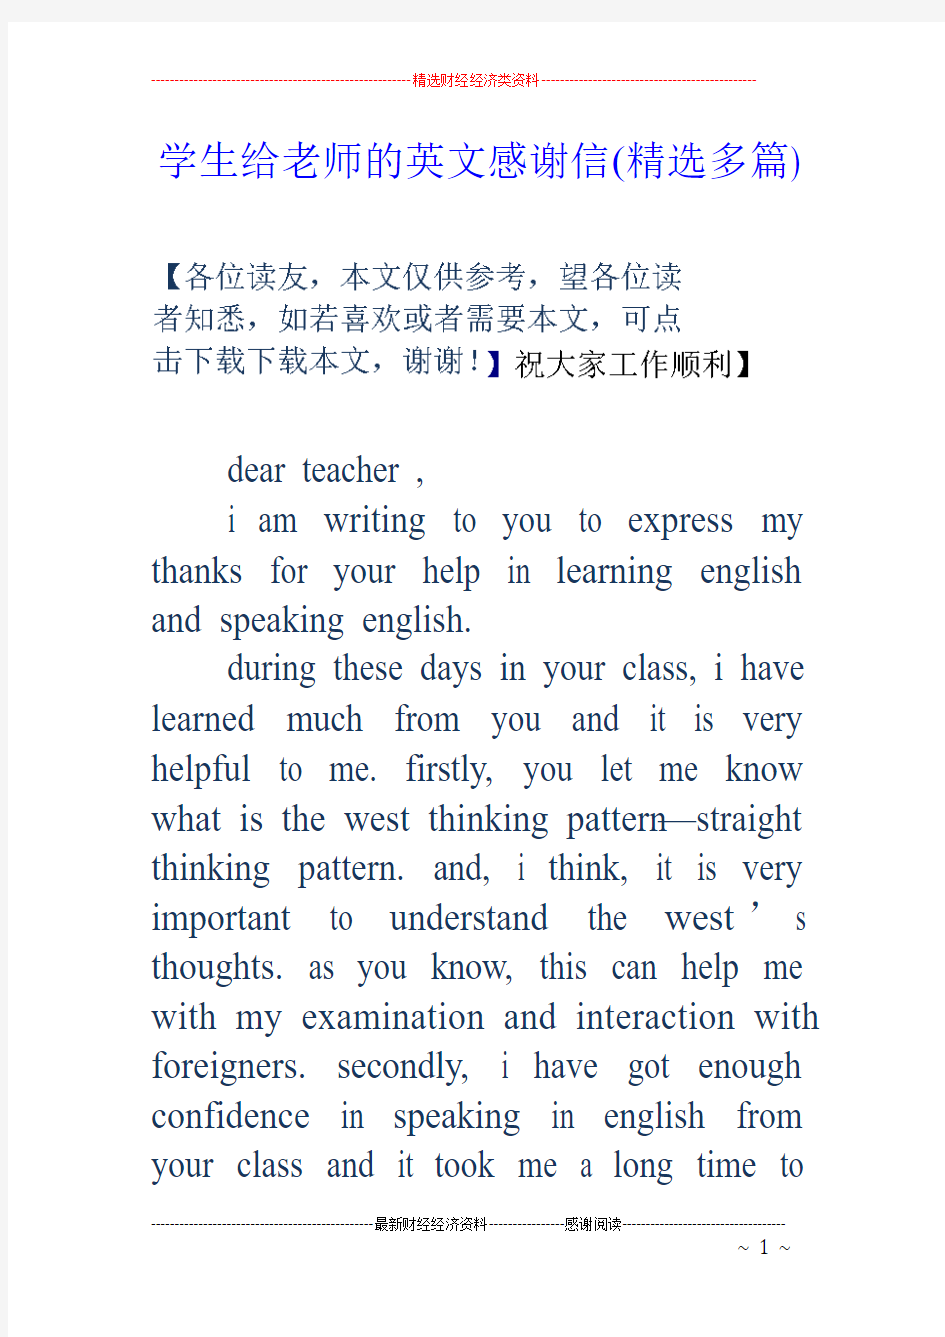 学生给老师的英文感谢信(精选多篇)